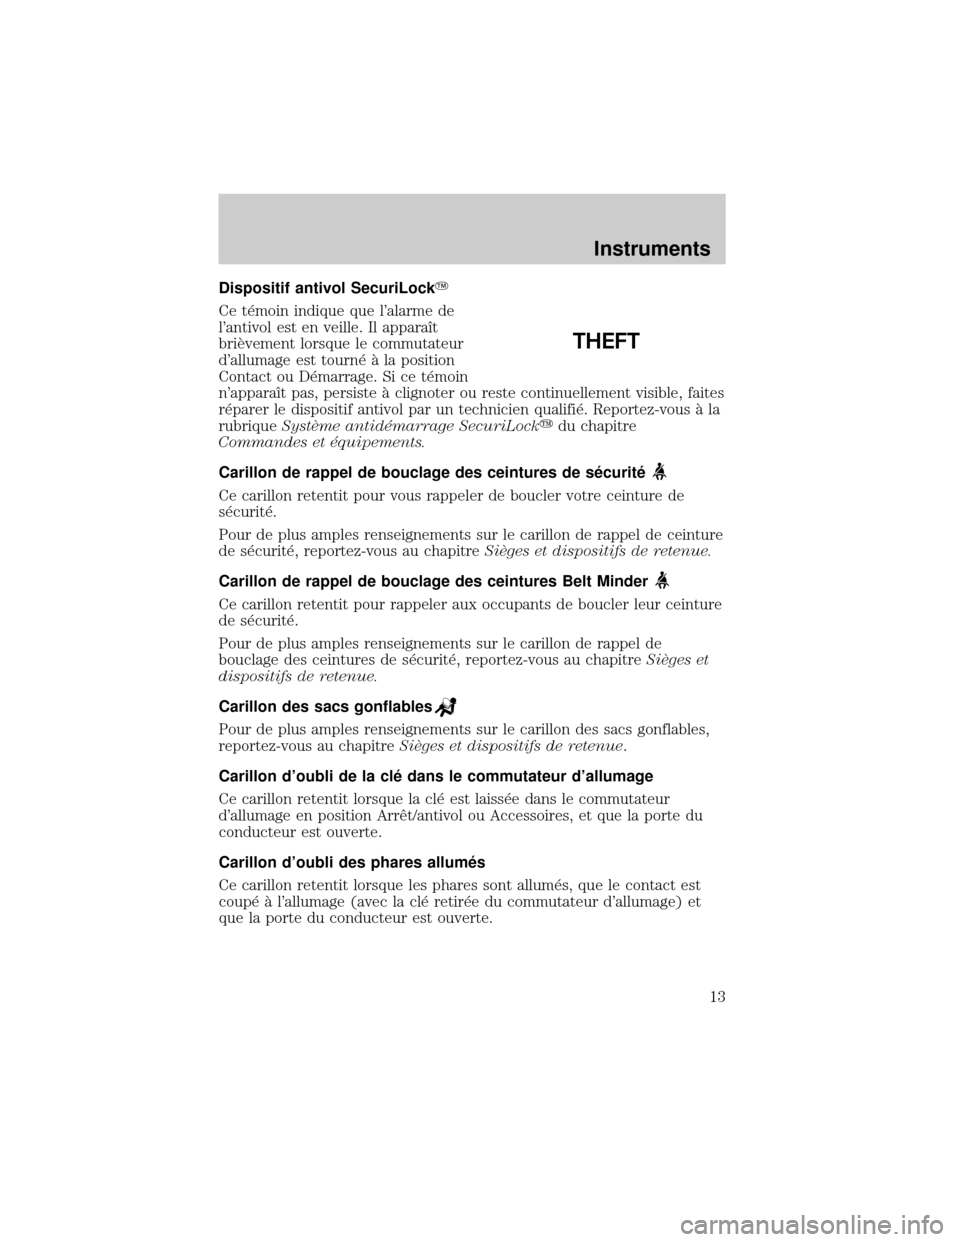 FORD EXCURSION 2001 1.G User Guide Dispositif antivol SecuriLockY
Ce t×moin indique que lalarme de
lantivol est en veille. Il apparaÜt
briÖvement lorsque le commutateur
dallumage est tourn× ° la position
Contact ou D×marrage. 